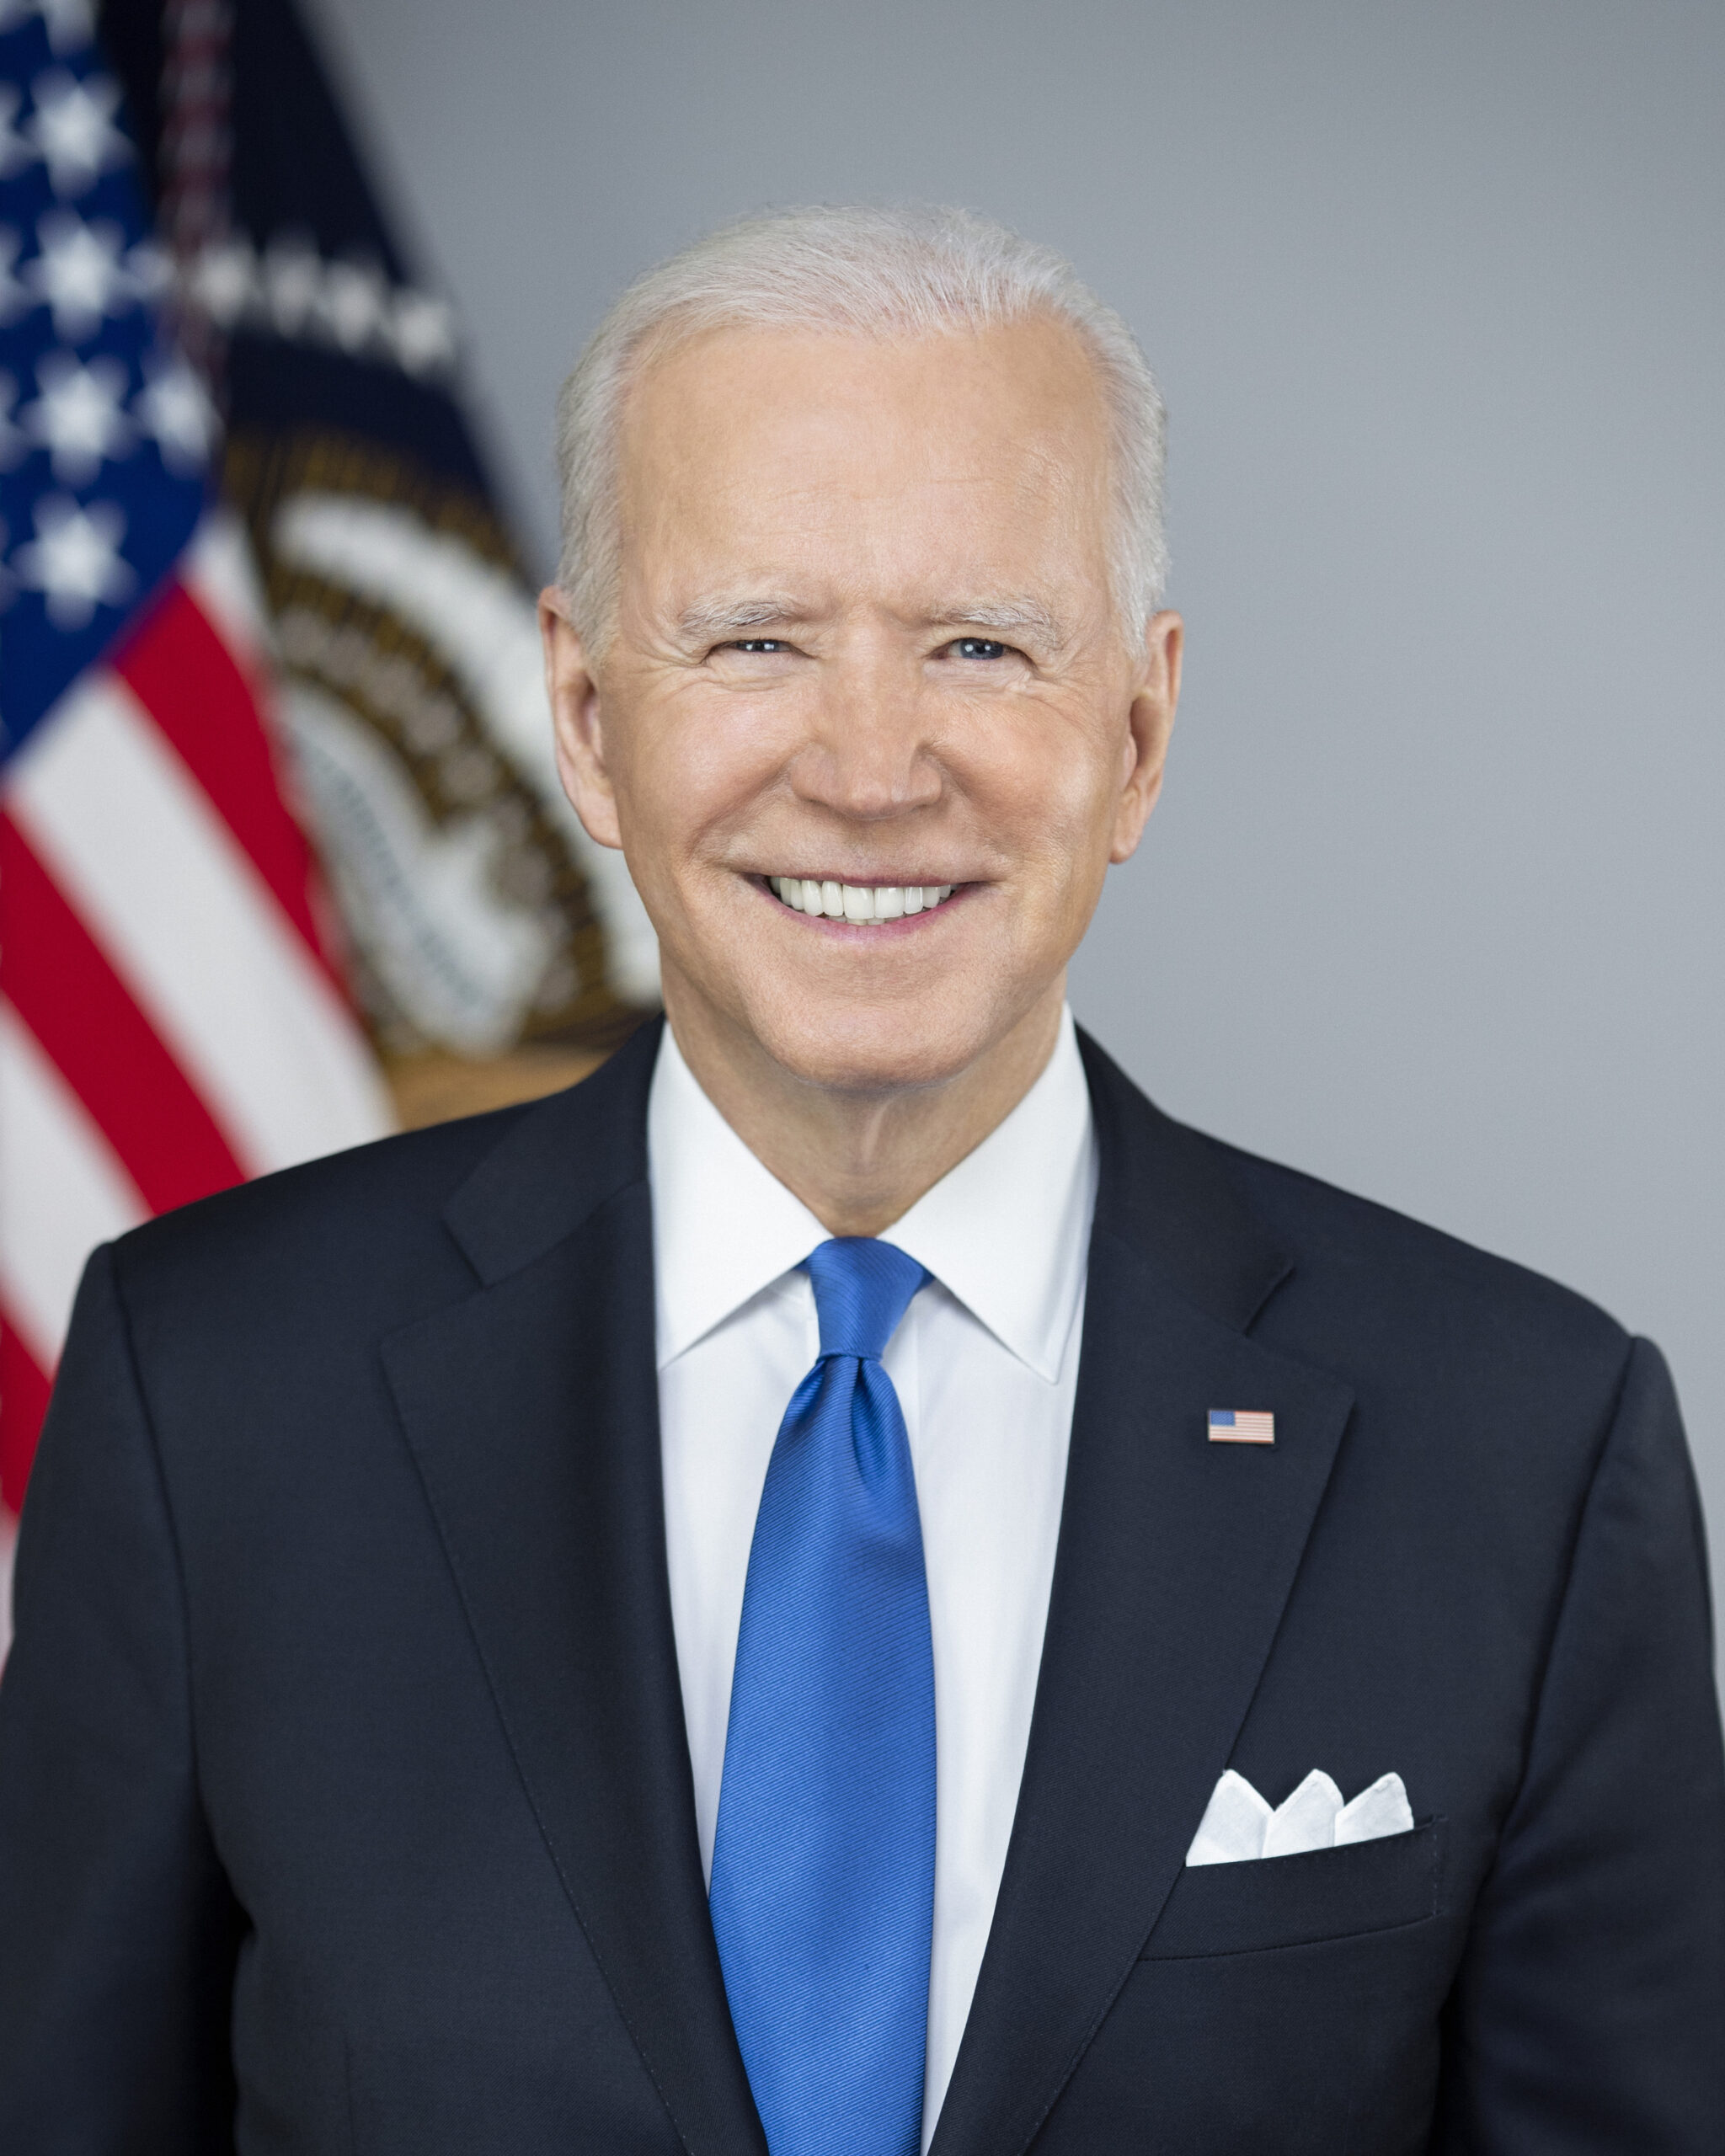 Joe-Biden-presidential-portrait